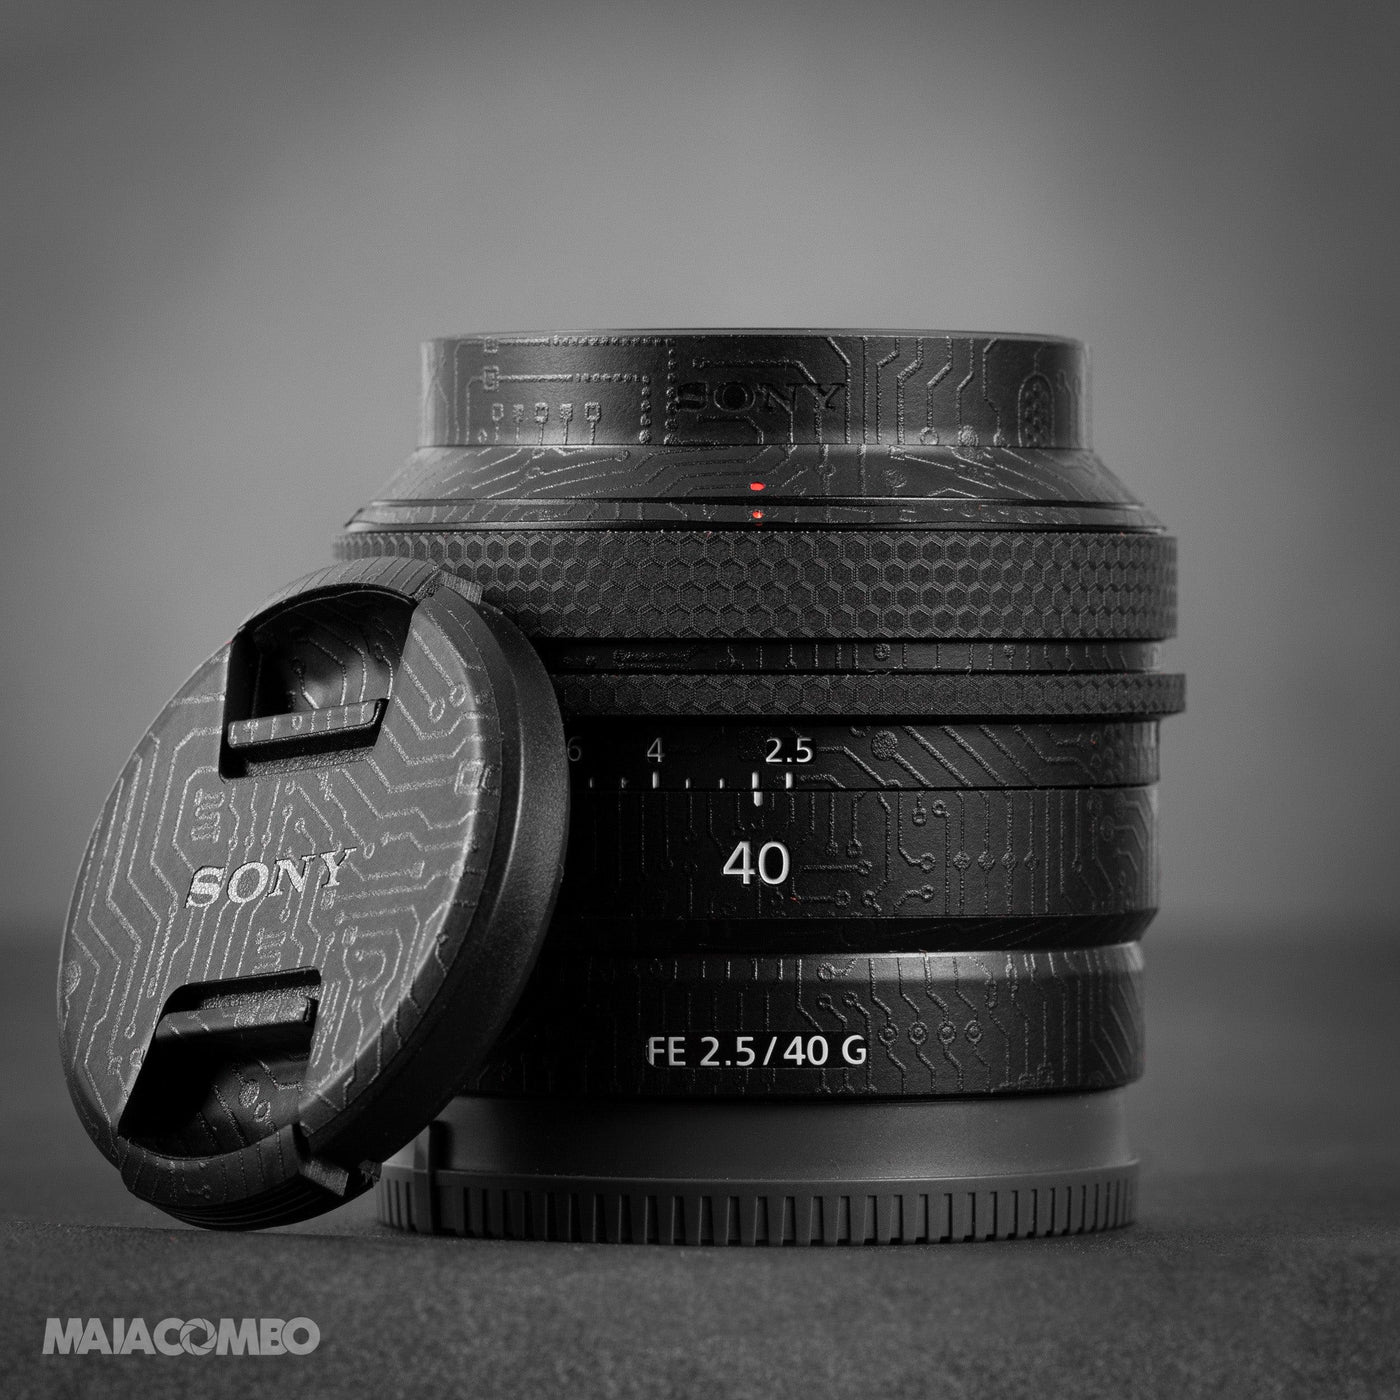 SONY FE 40mm F2.5 G Lens Skin - MAIACOMBO